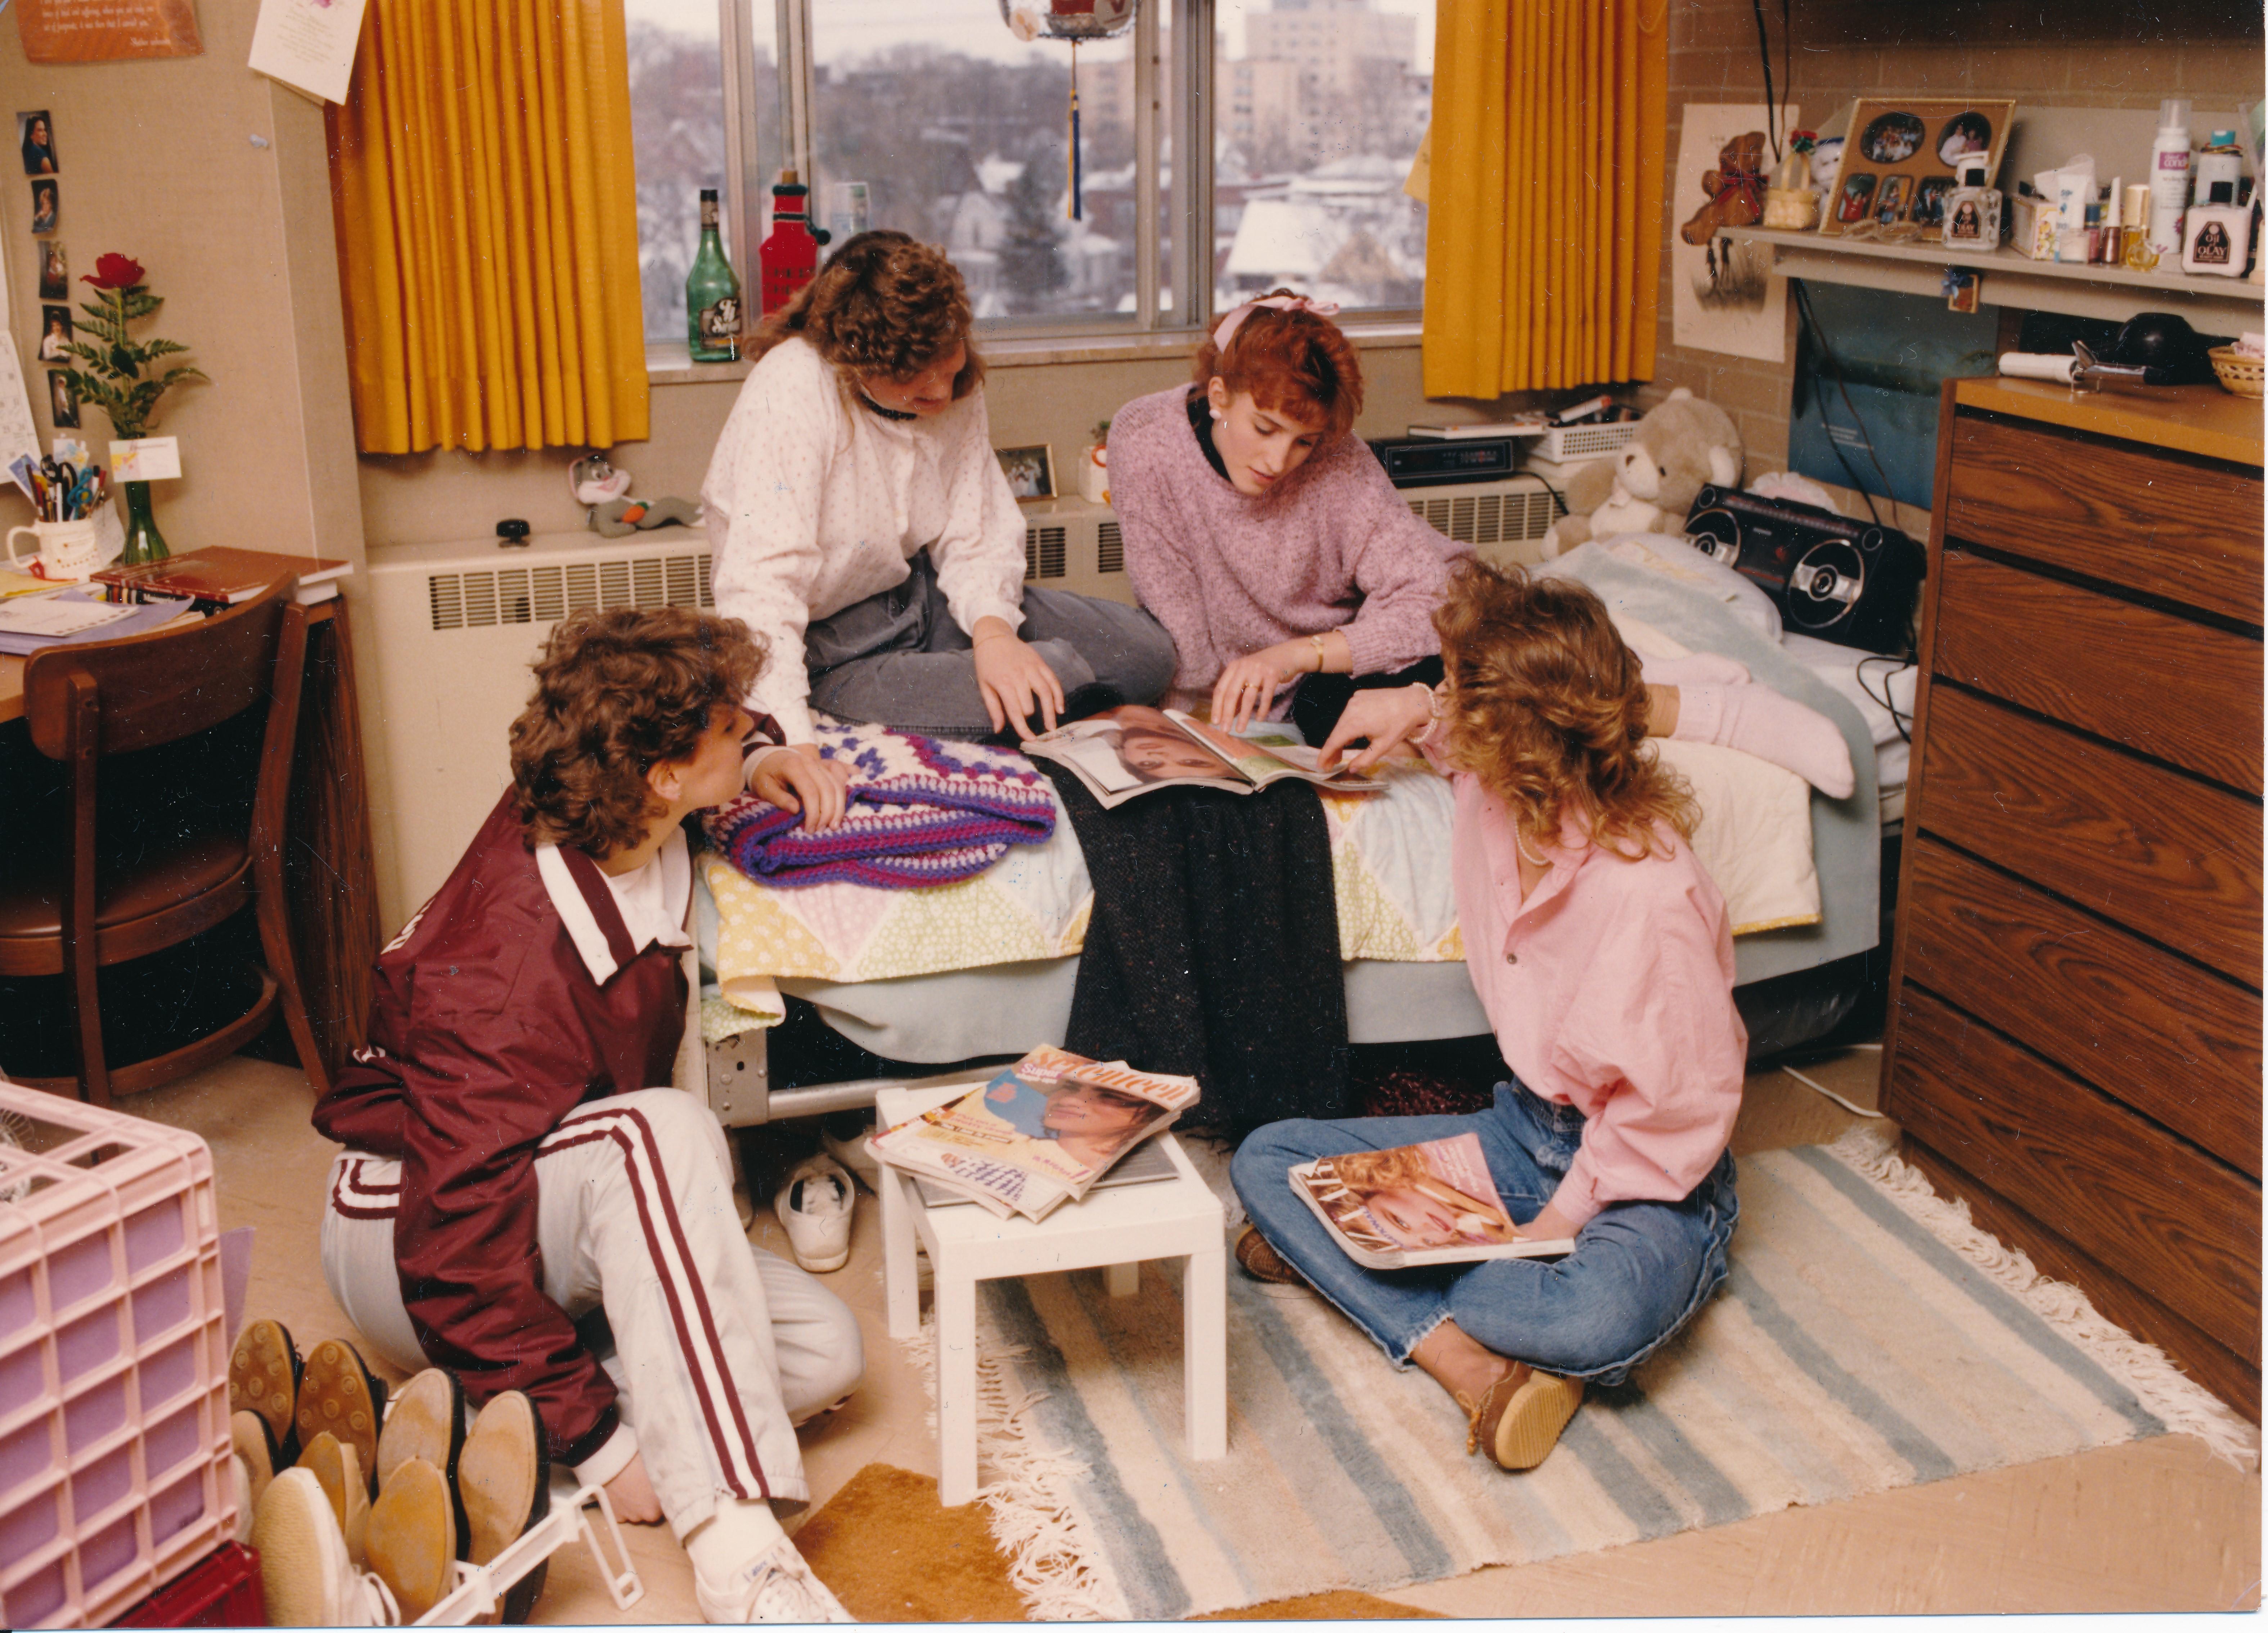 Students in Bonaventure, 1980s